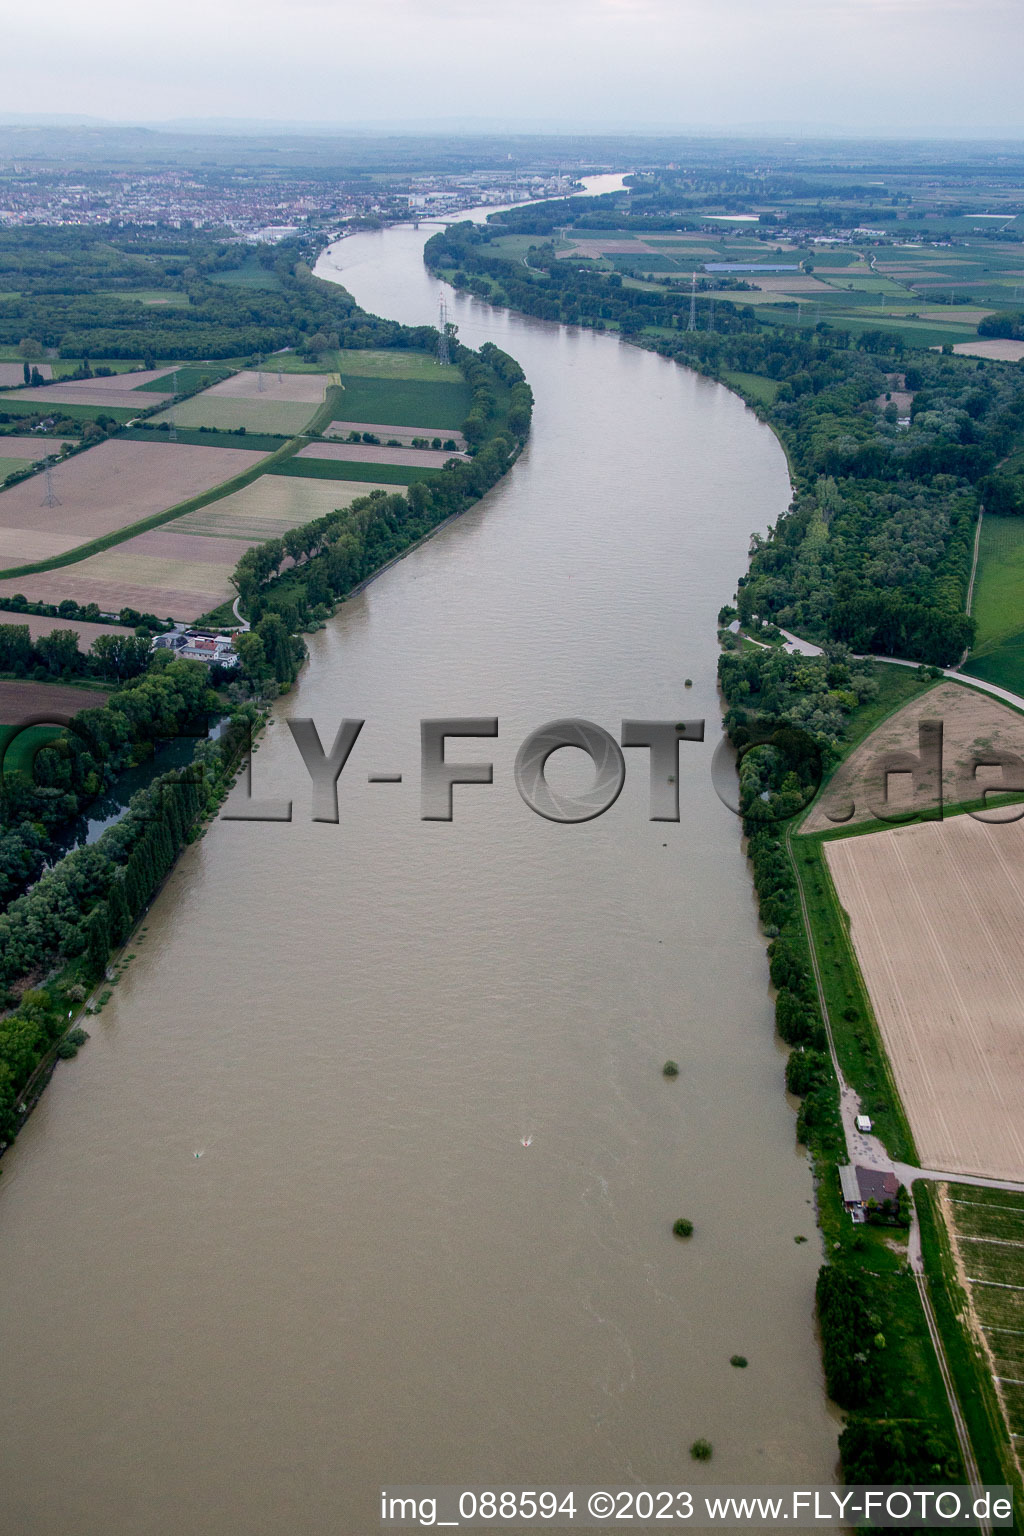 Petersau im Bundesland Rheinland-Pfalz, Deutschland aus der Luft betrachtet